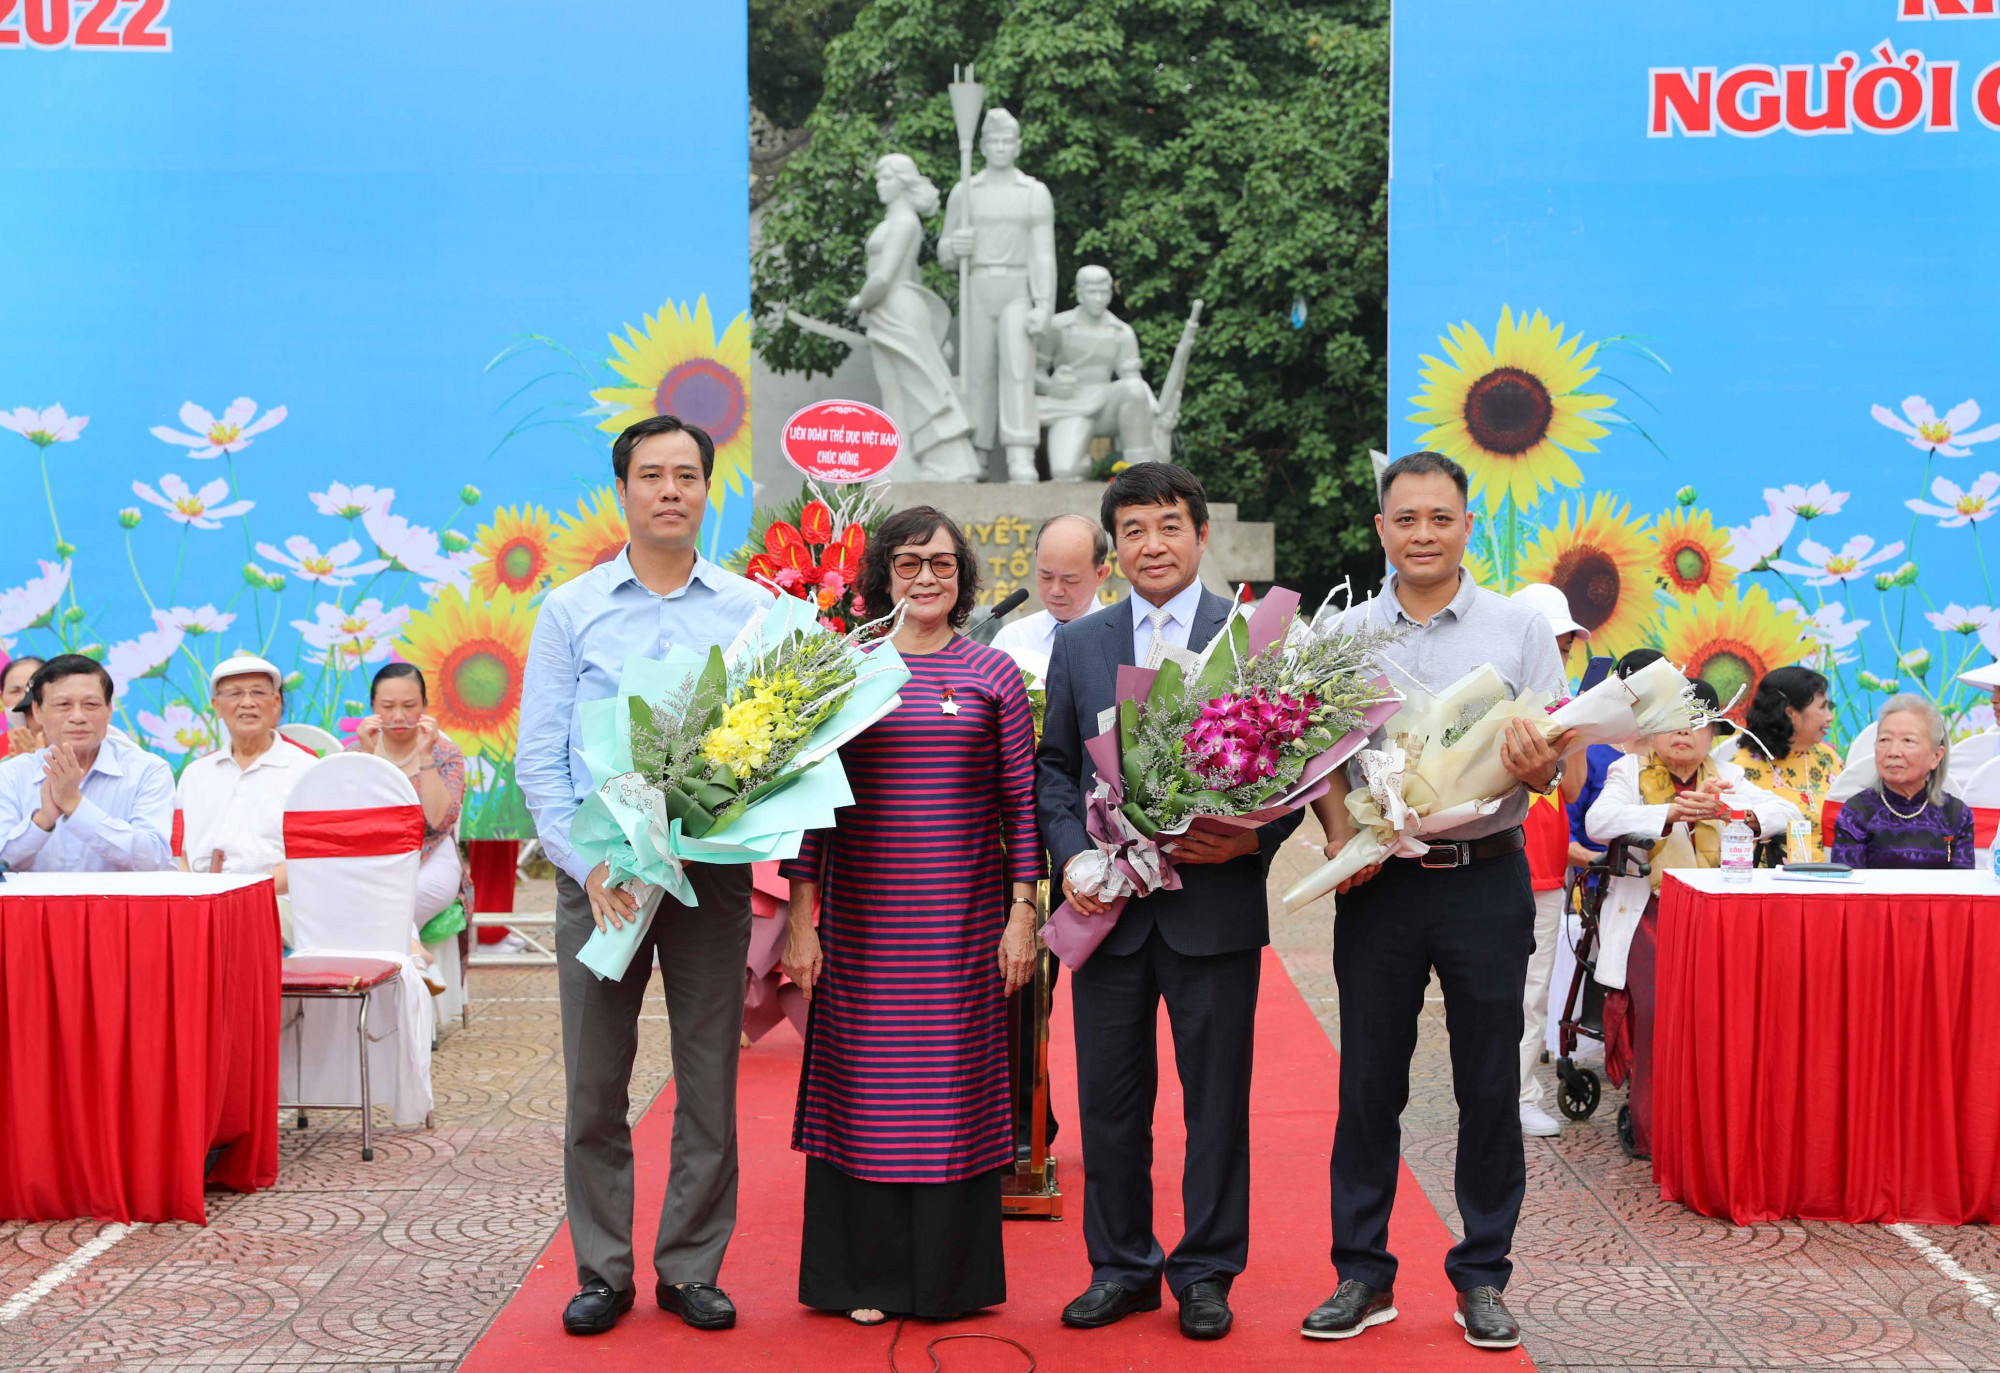 Ông Vũ Tuấn Khang (ngoài cùng bên phải) - đại diện Công ty Vinamilk nhận hoa từ ban tổ chức- Ảnh: Vinamilk